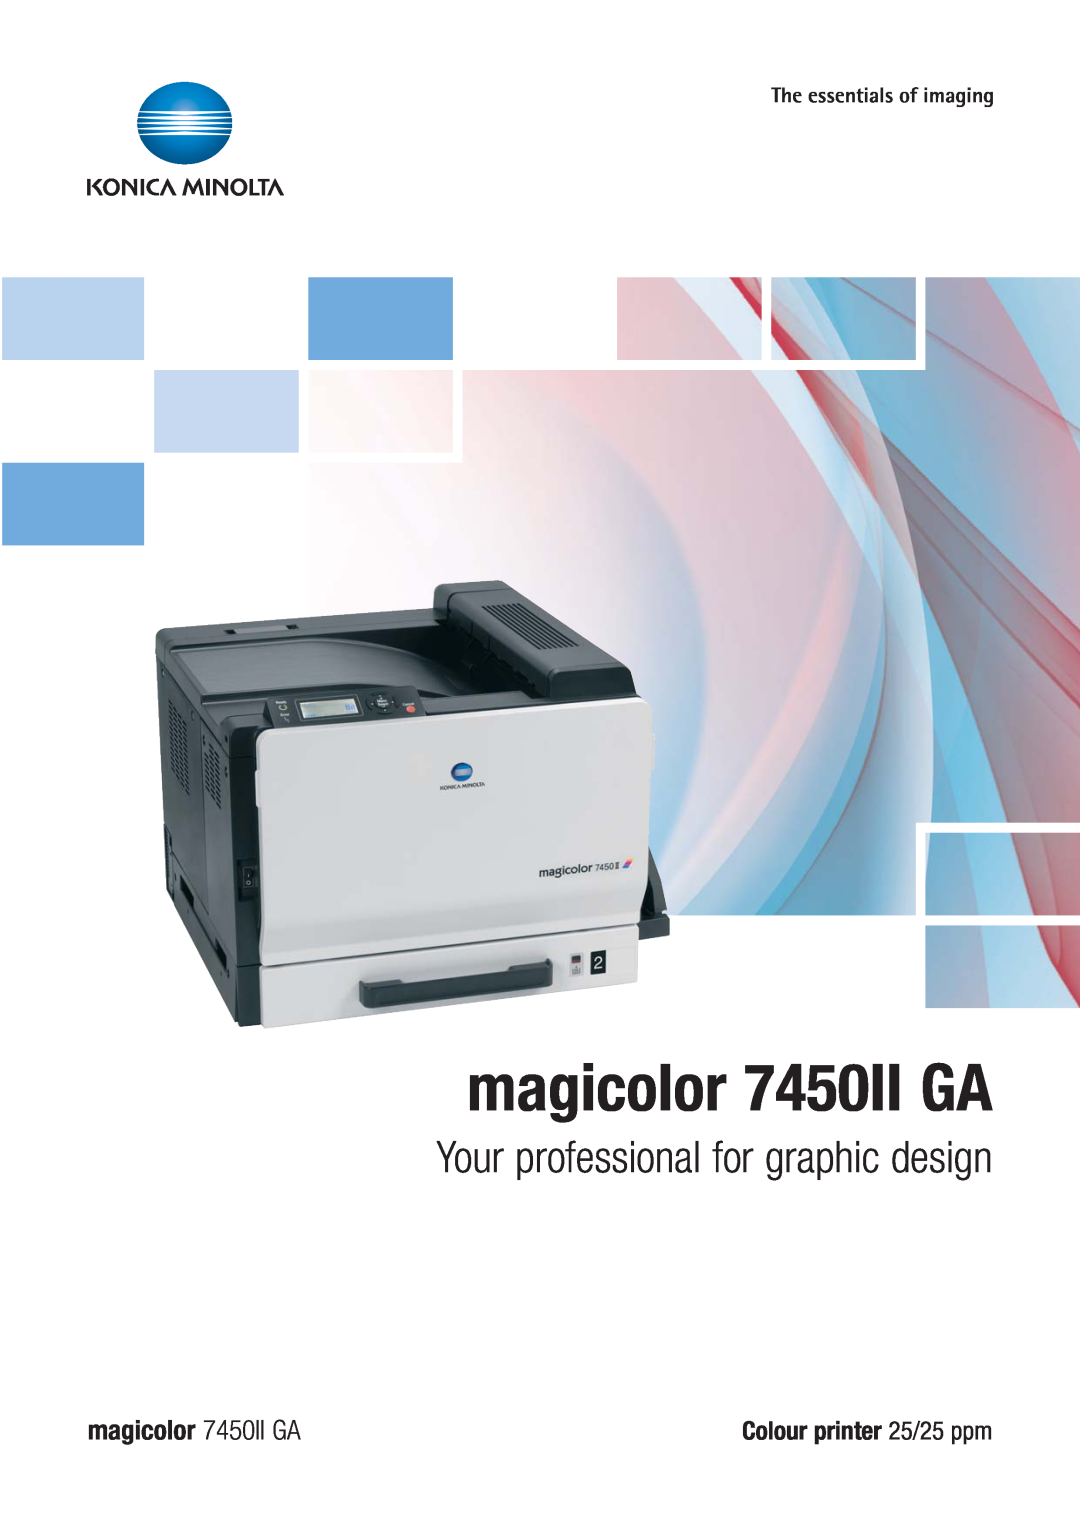 Konica Minolta manual magicolor 7450II GA, Your professional for graphic design, Colour printer 25/25 ppm 